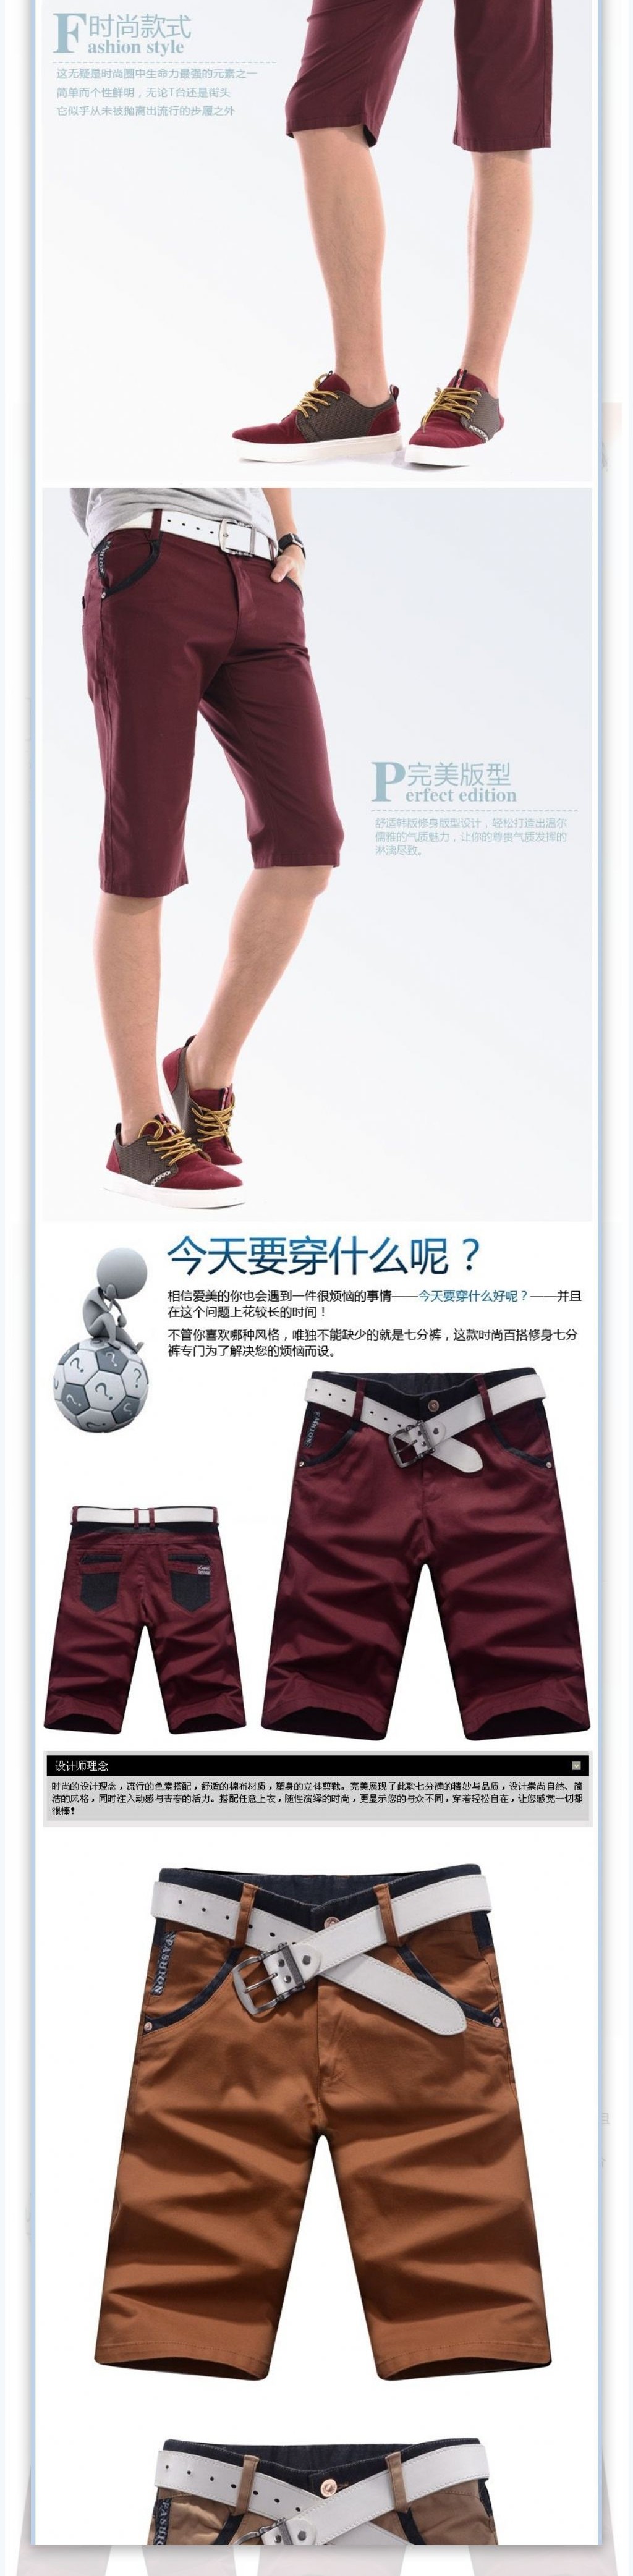 时尚男士夏季短裤描述详情页海报